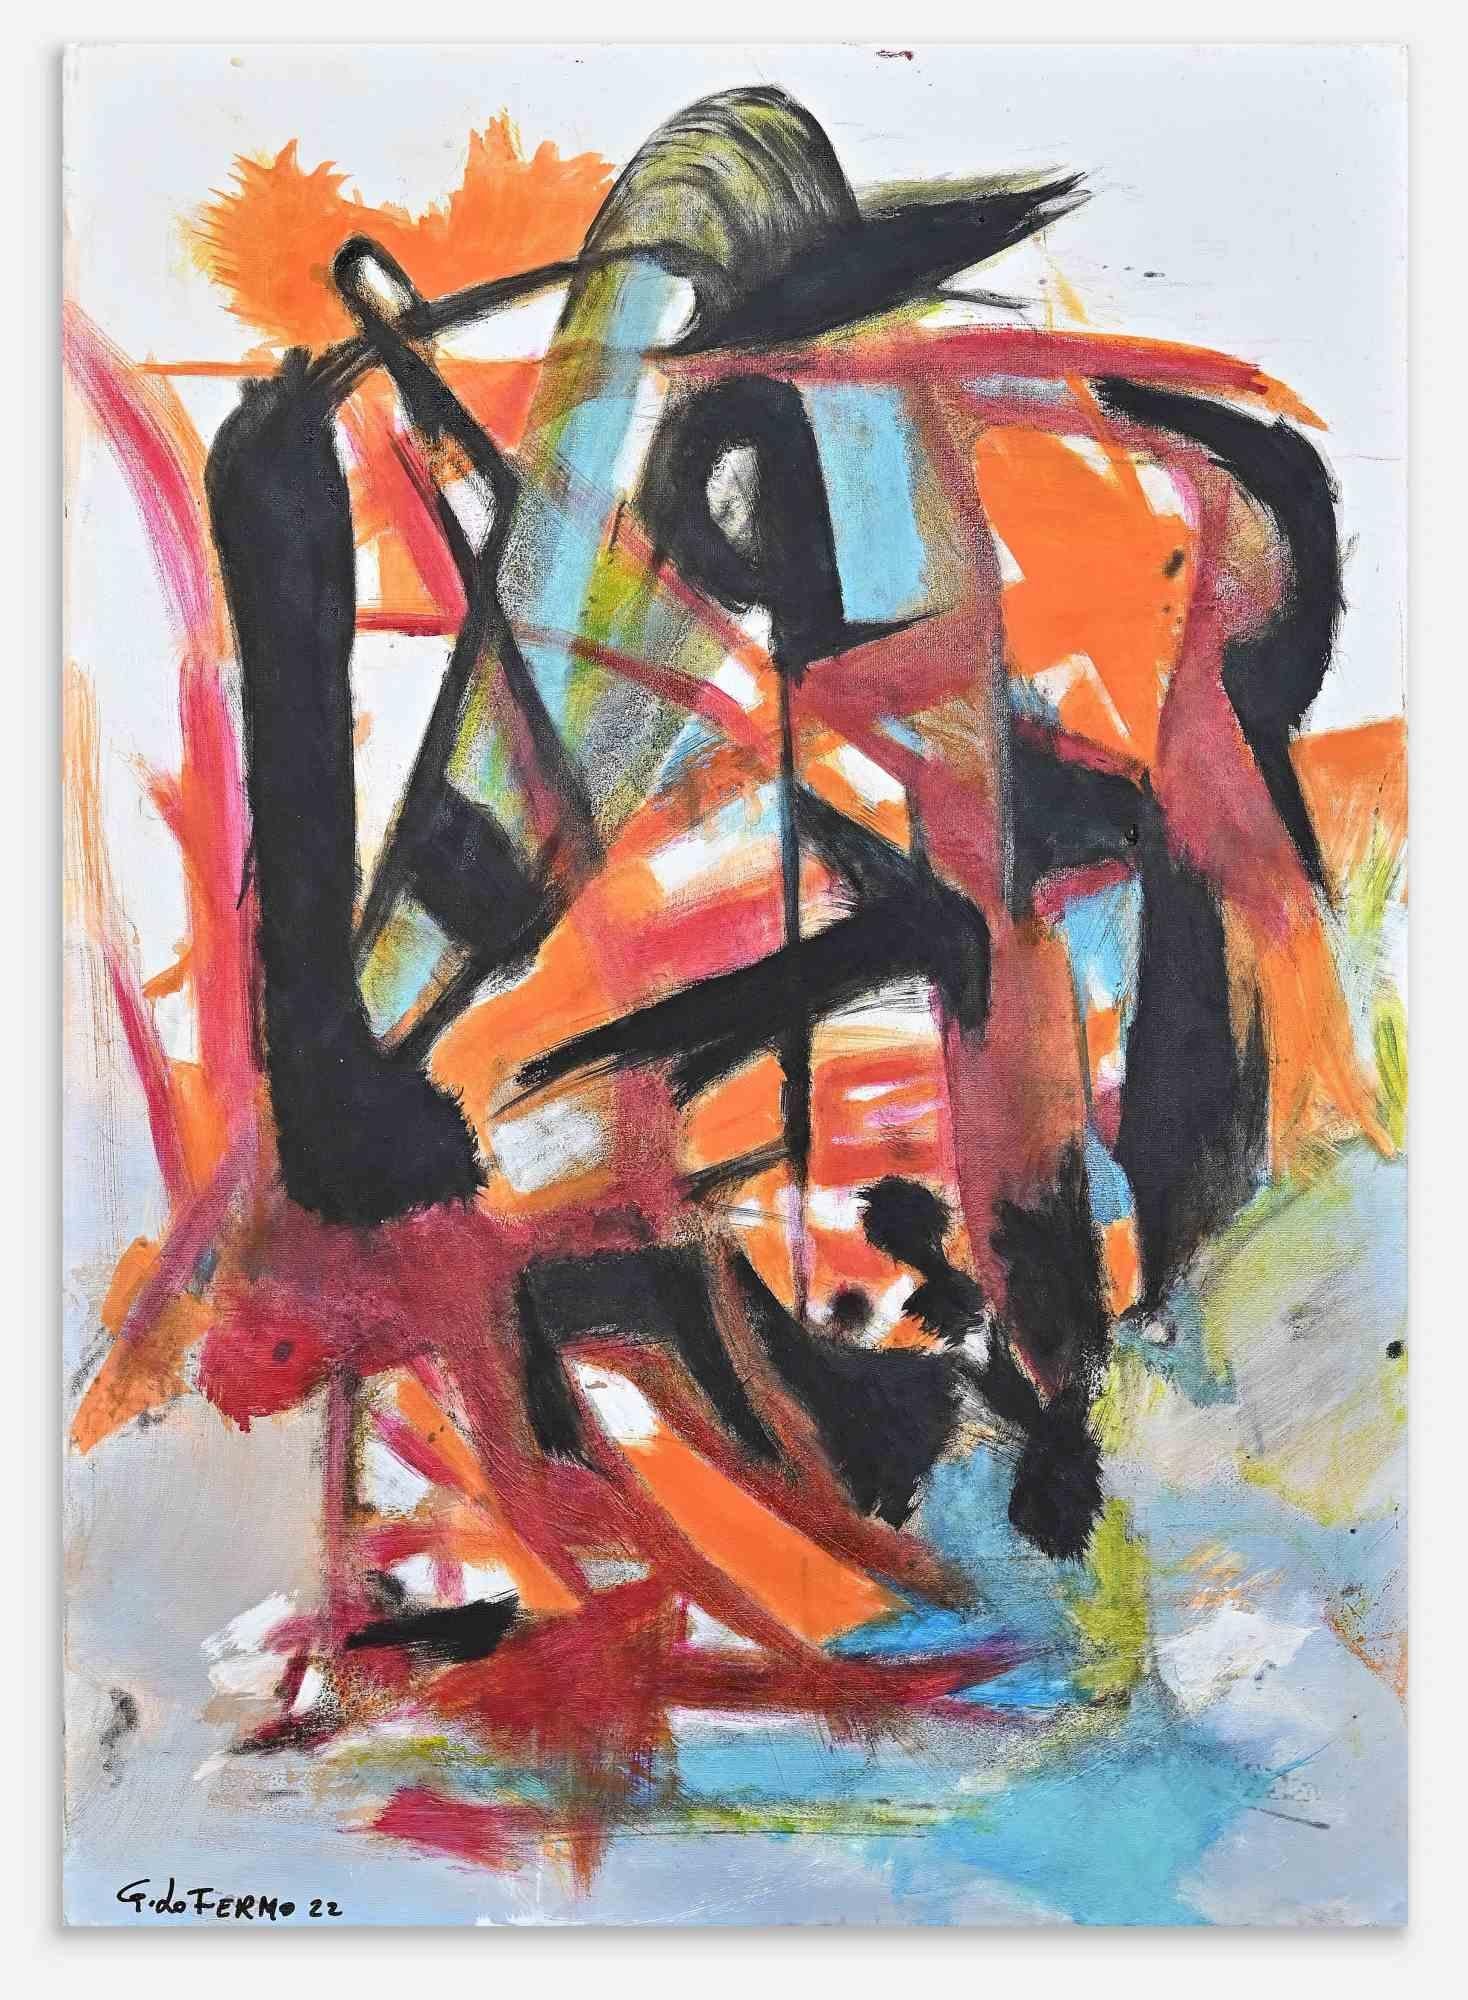 Abstract Expression ist ein Kunstwerk, das von Giorgio Lo Fermo (geb. 1947) im Jahr 2022 realisiert wurde.

Original Ölgemälde auf Leinwand.

Handsigniert und datiert am linken unteren Rand.

Originaltitel: Espressionismo astratto

Handsigniert,